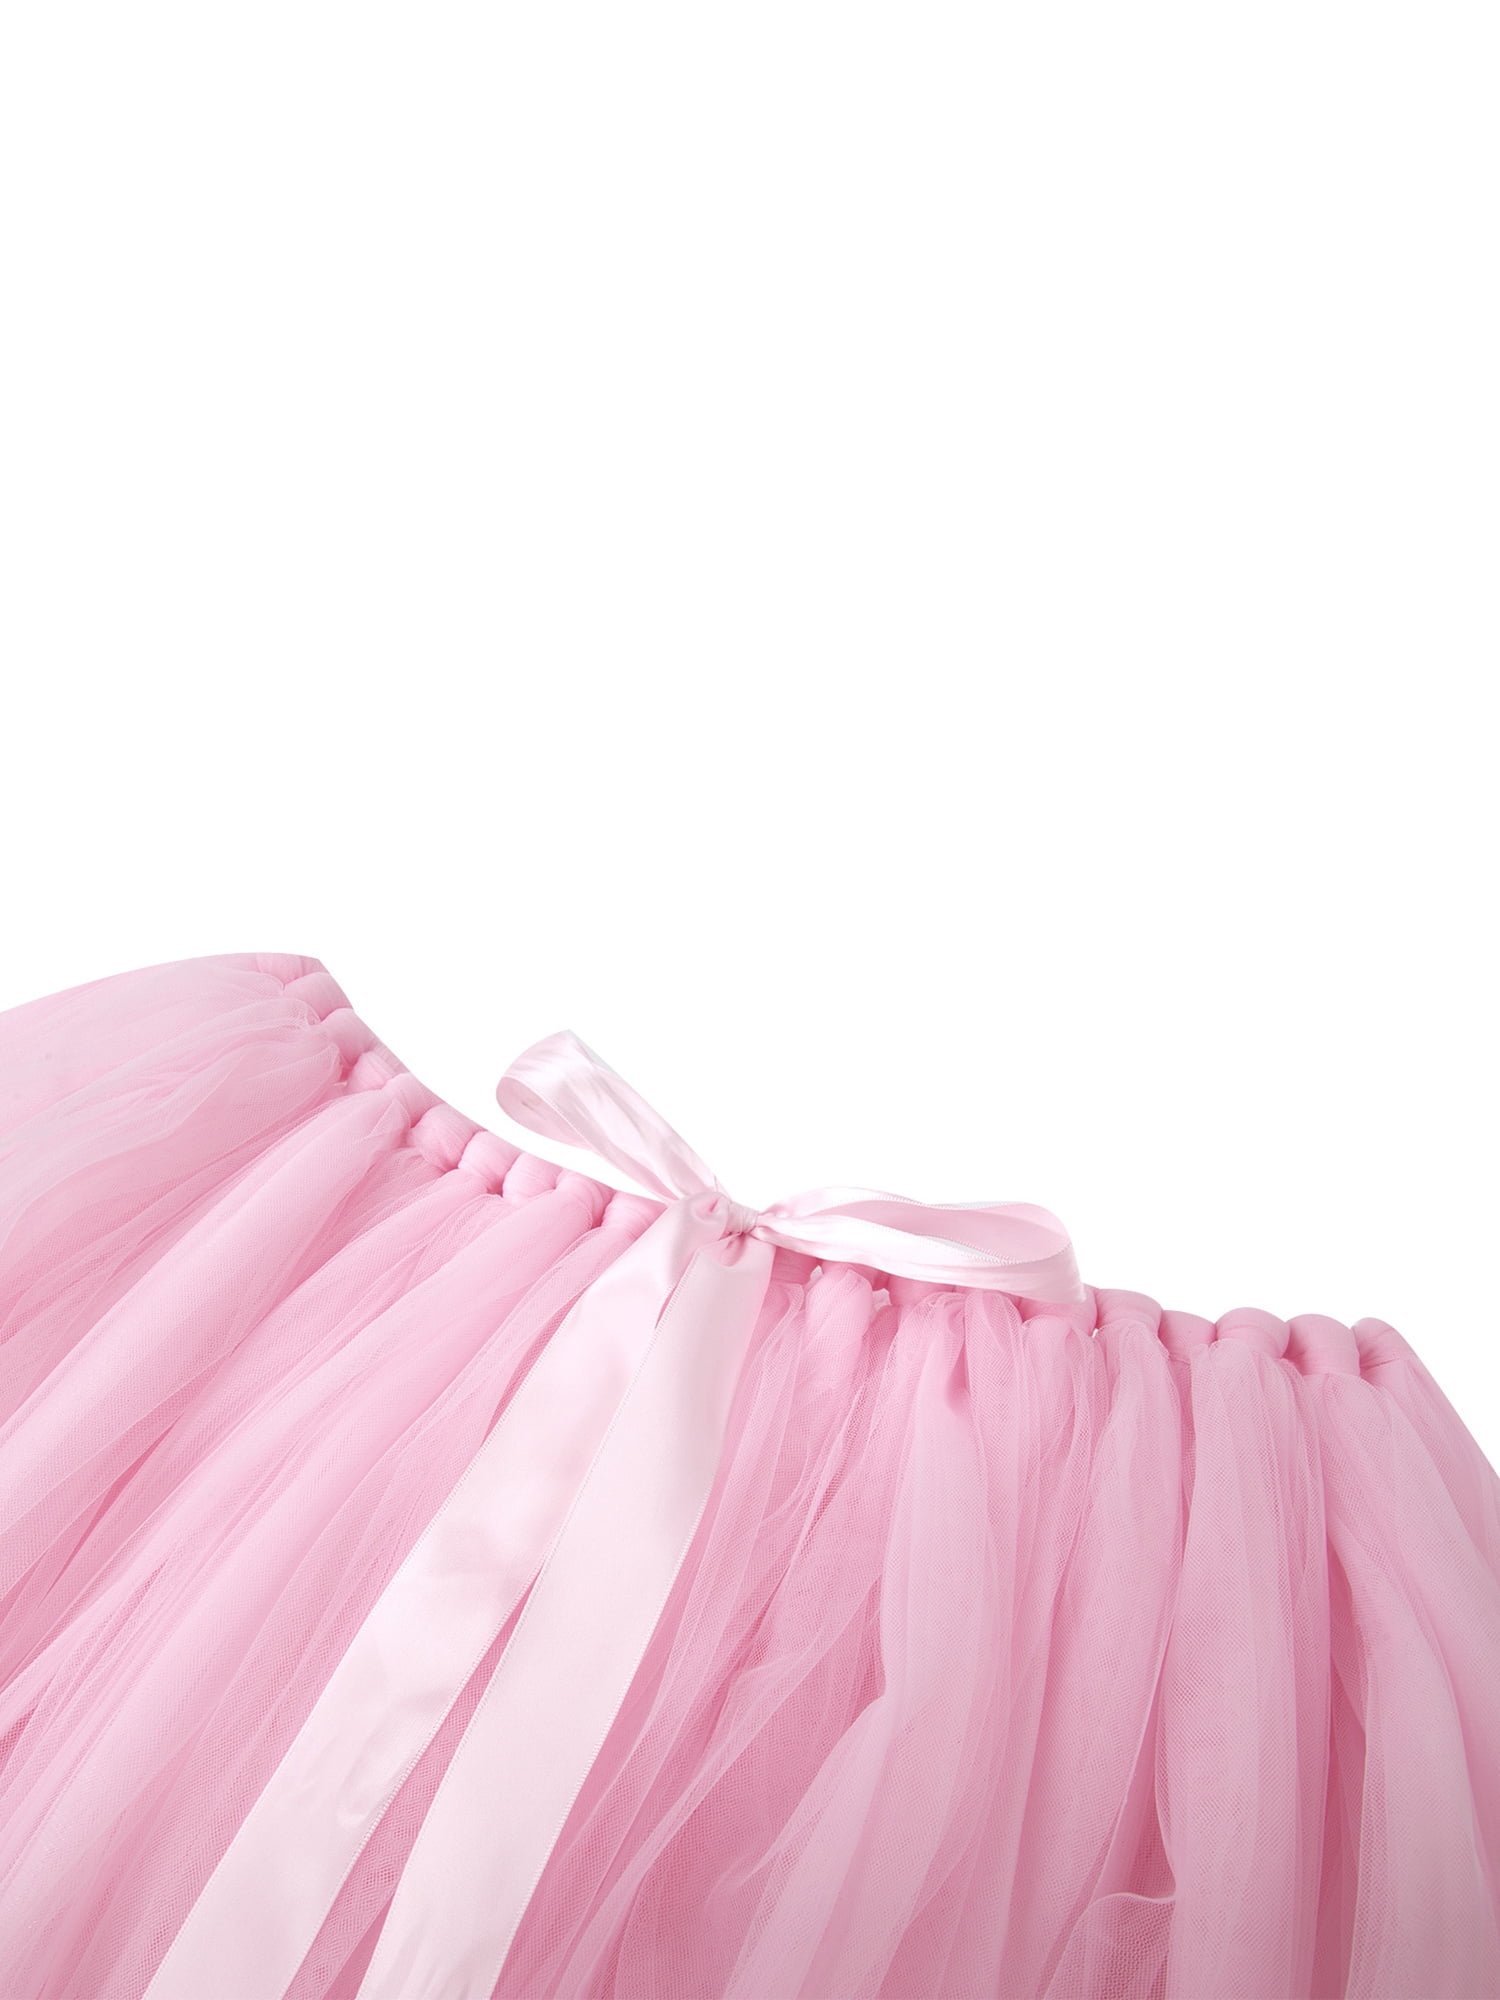 wybzd Women Princess Bubble Skirt, Girls Mesh Long Overskirt Performance  Photography Clothing Tie Up Waist Half Skirt Light Pink